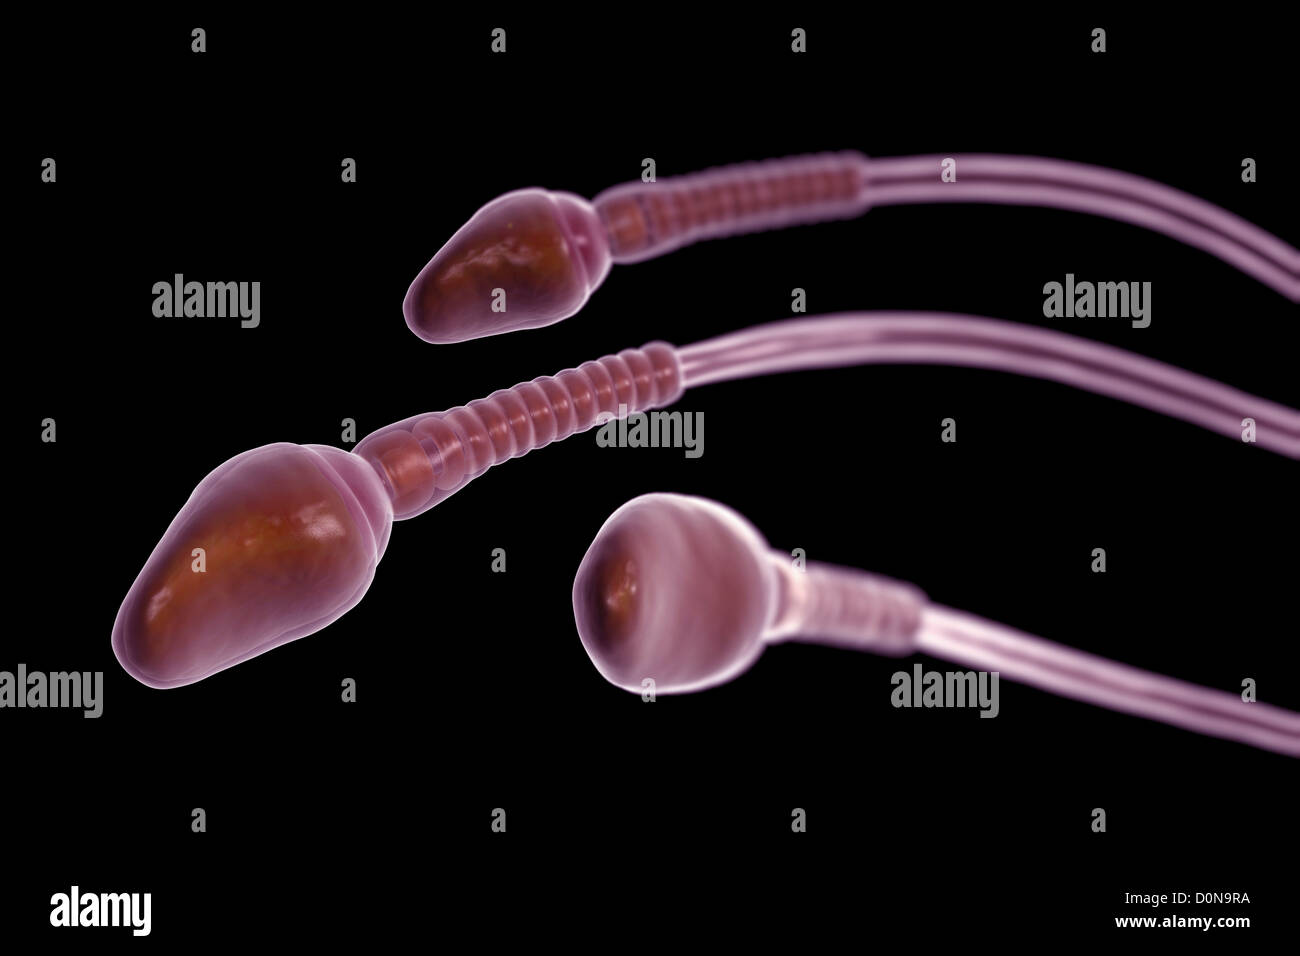 Amateur Sperm